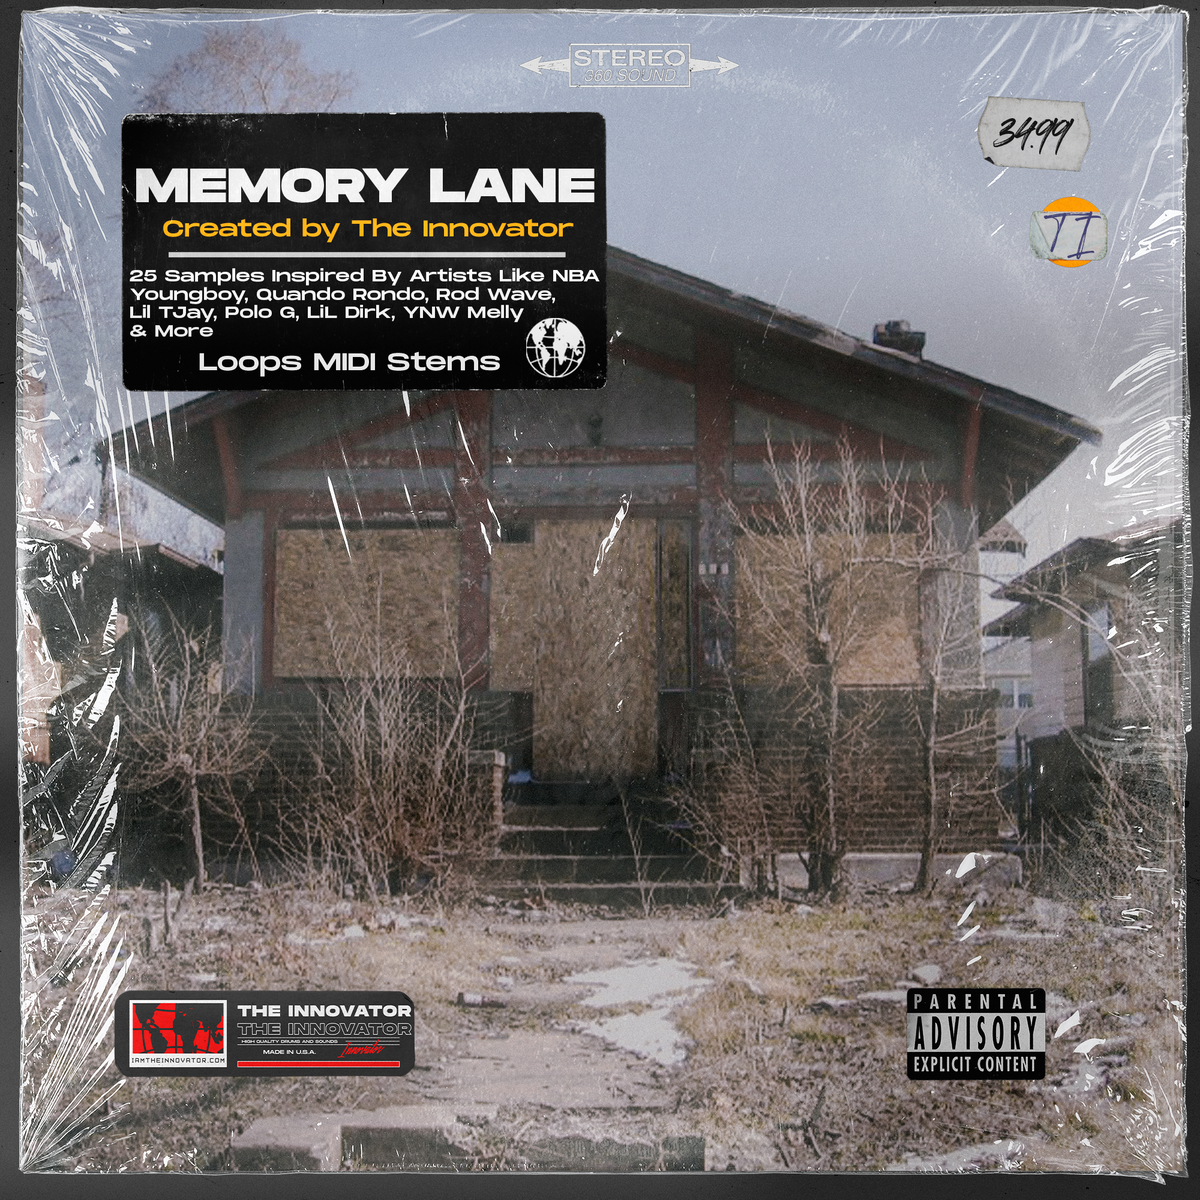 memory lane